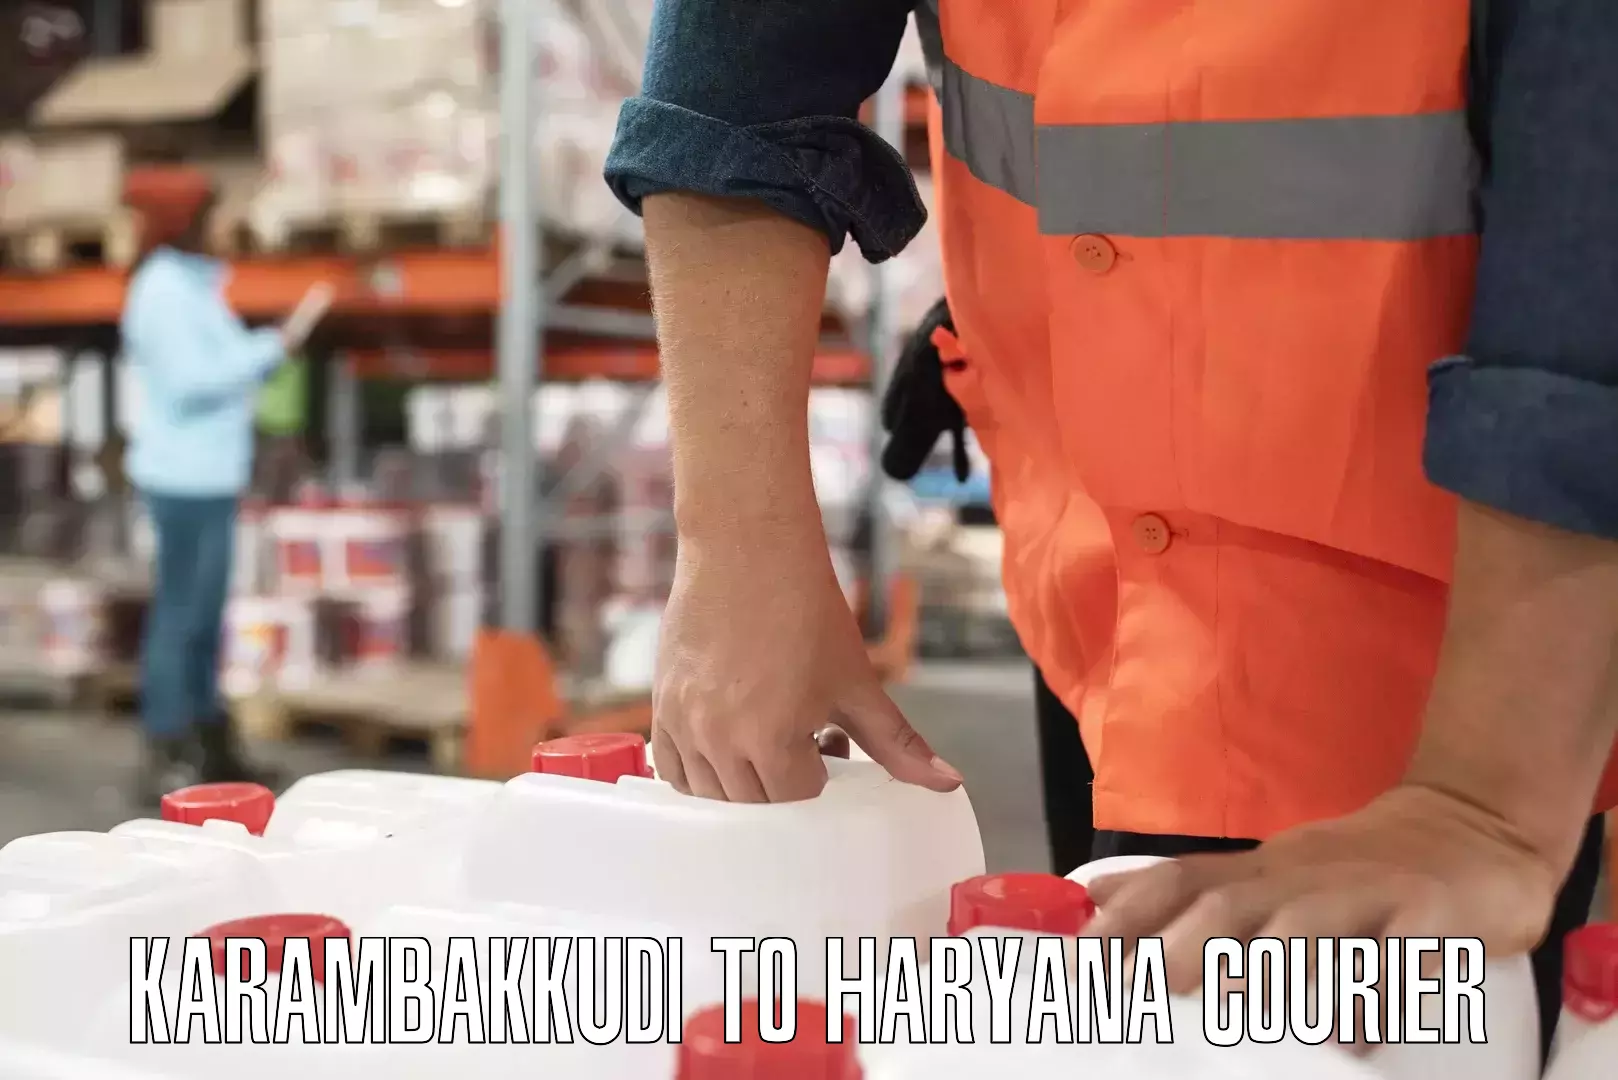 E-commerce logistics support Karambakkudi to Assandh